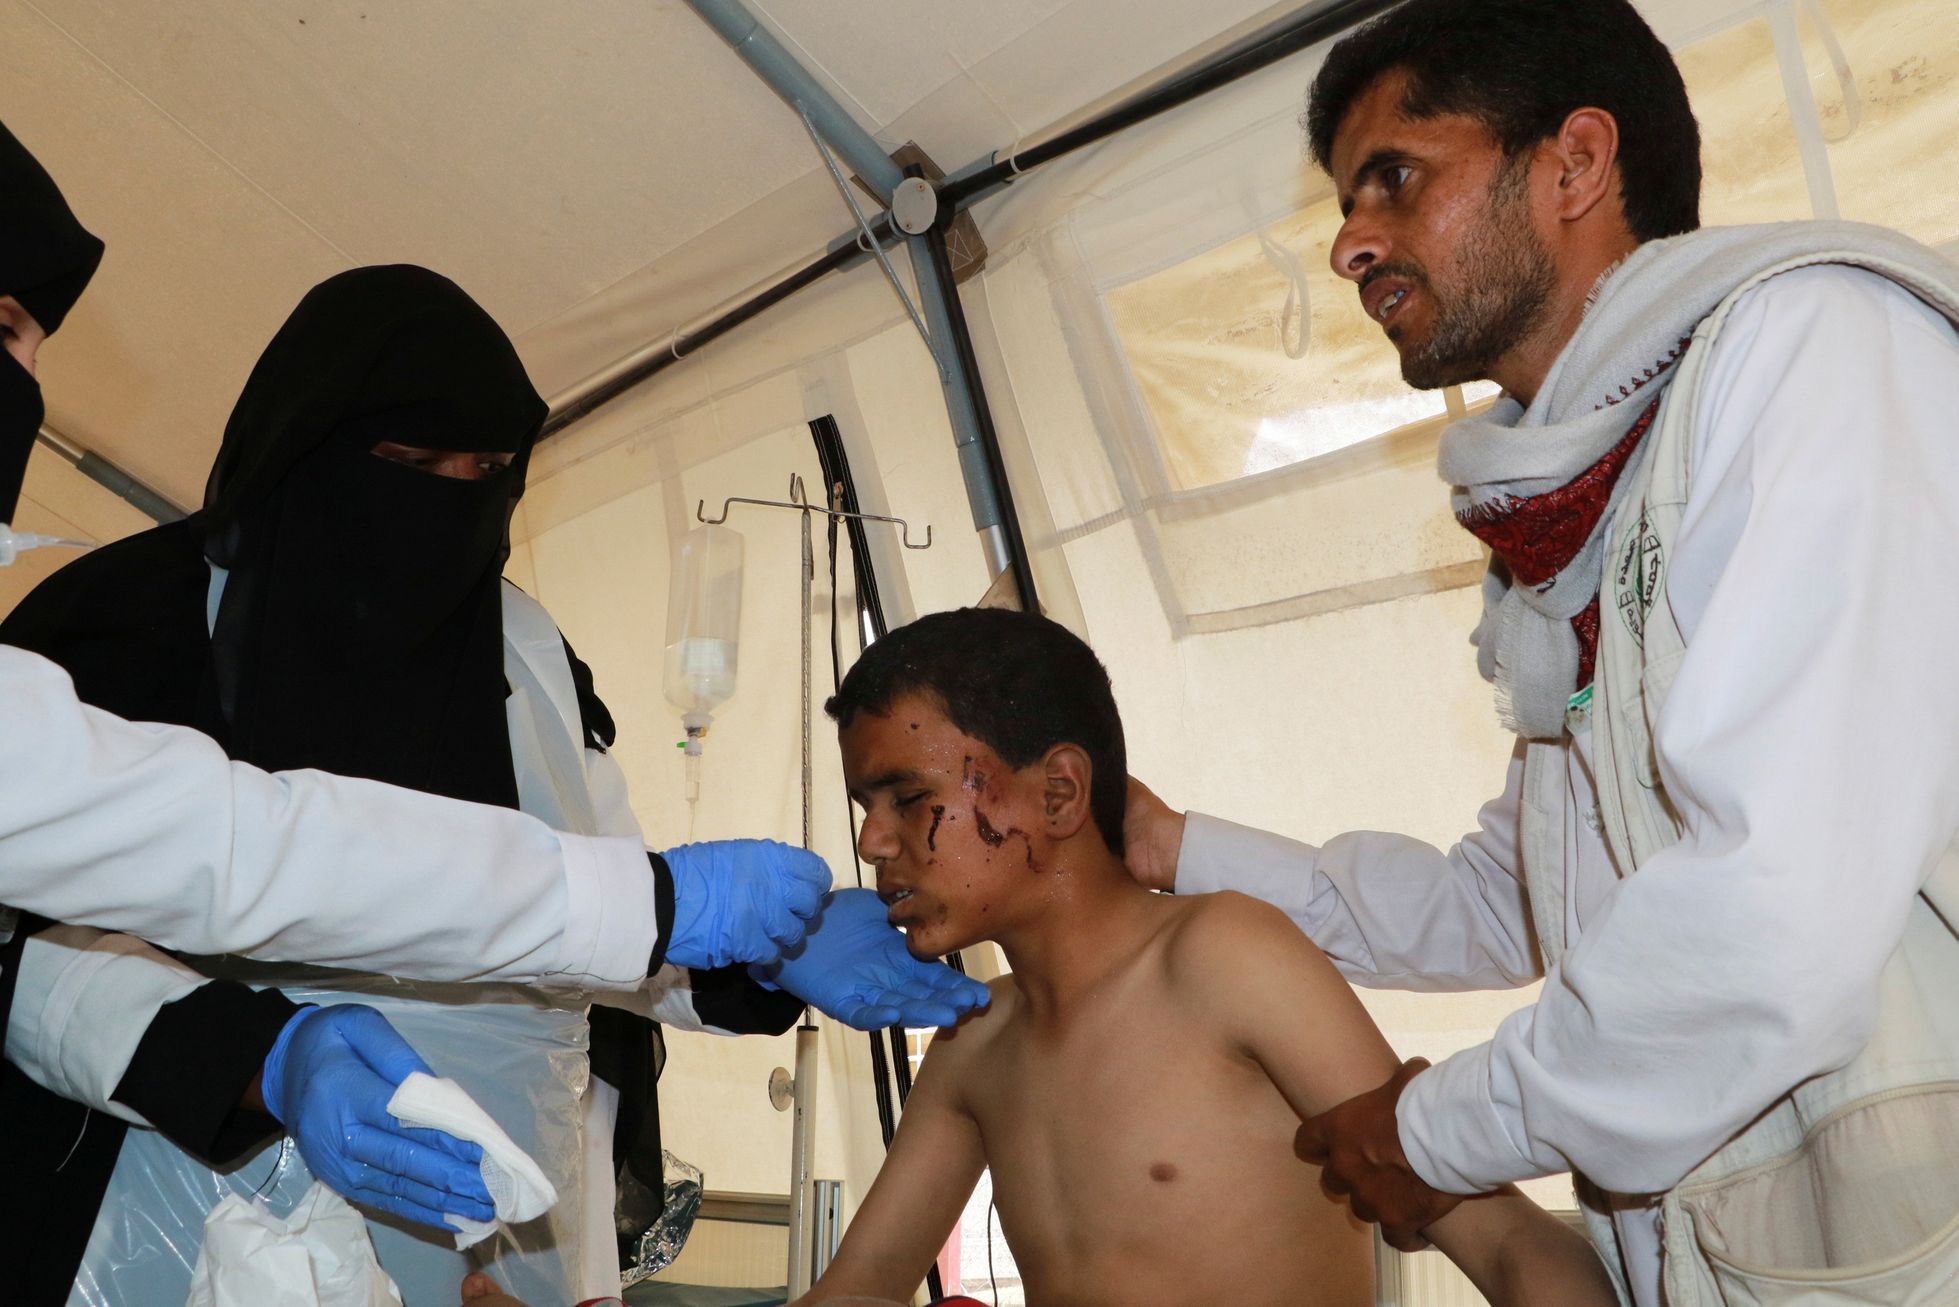 Lékaři ošetřují jemenského chlapce, kterého zasáhly nálety.